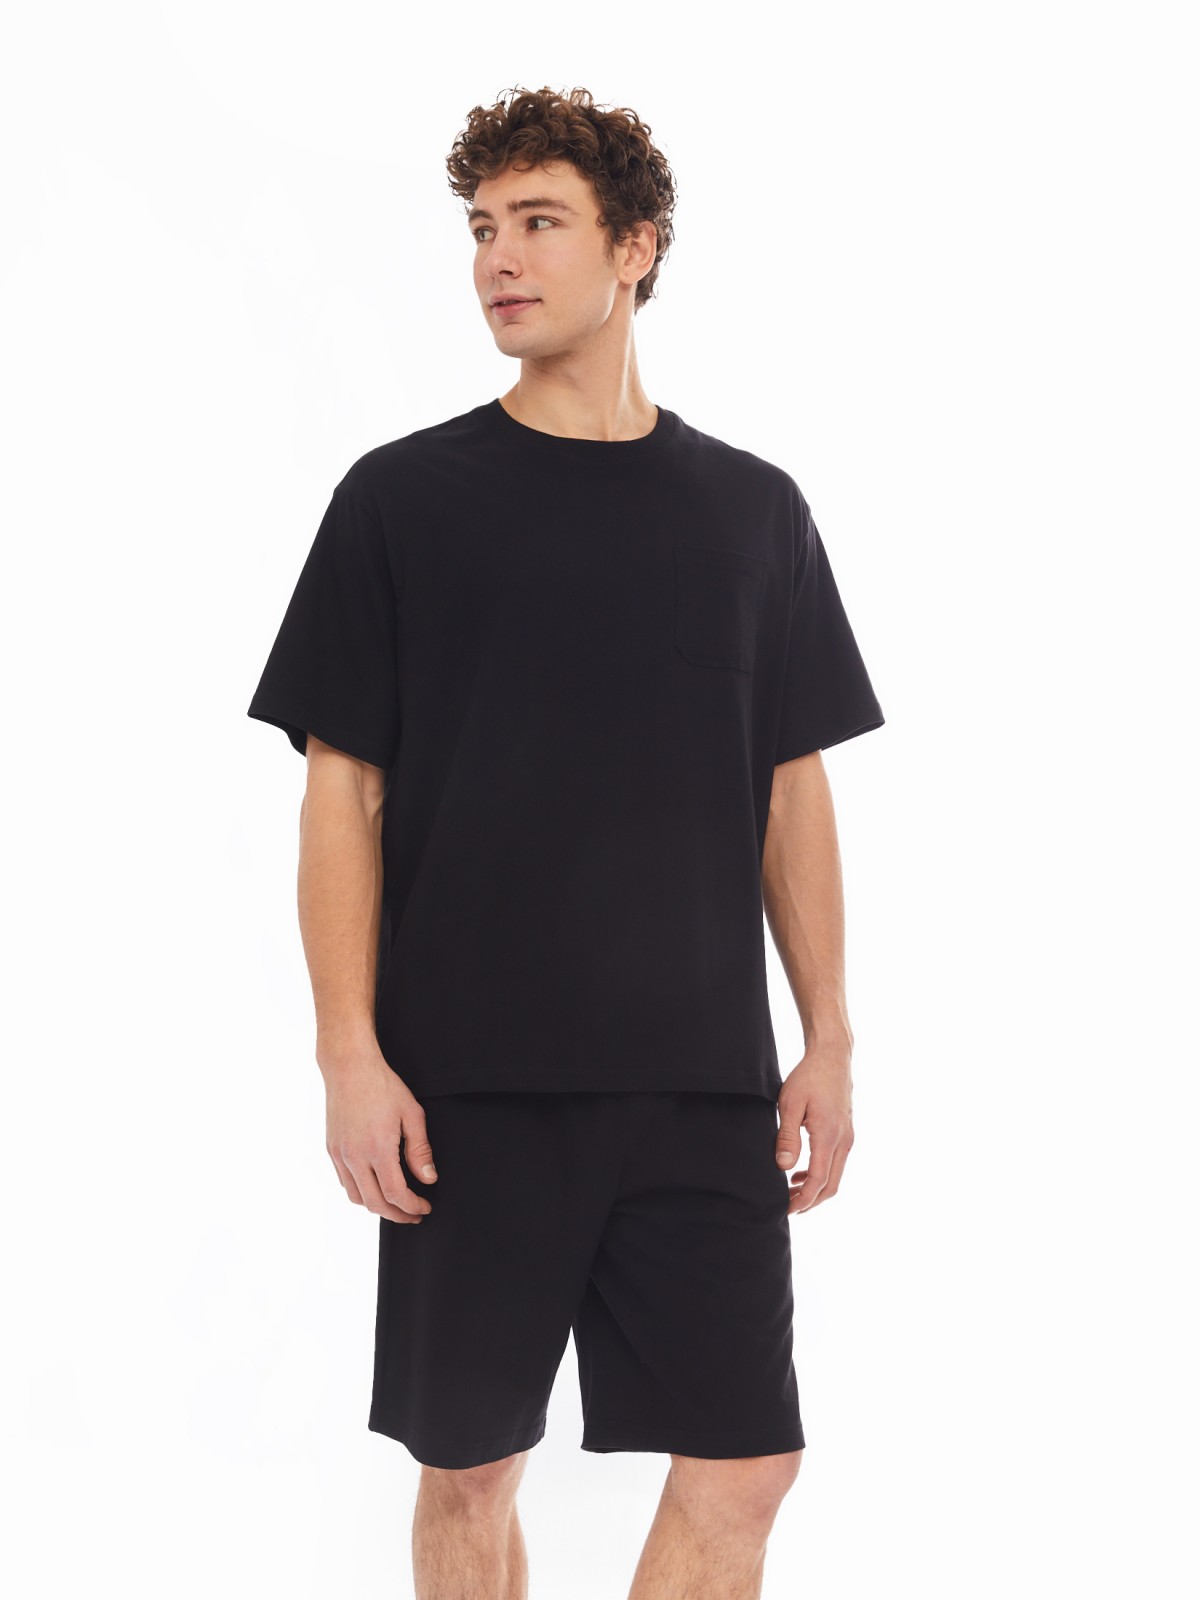 Домашний комплект из хлопка (футболка, шорты) zolla 61413870W041, цвет черный, размер S